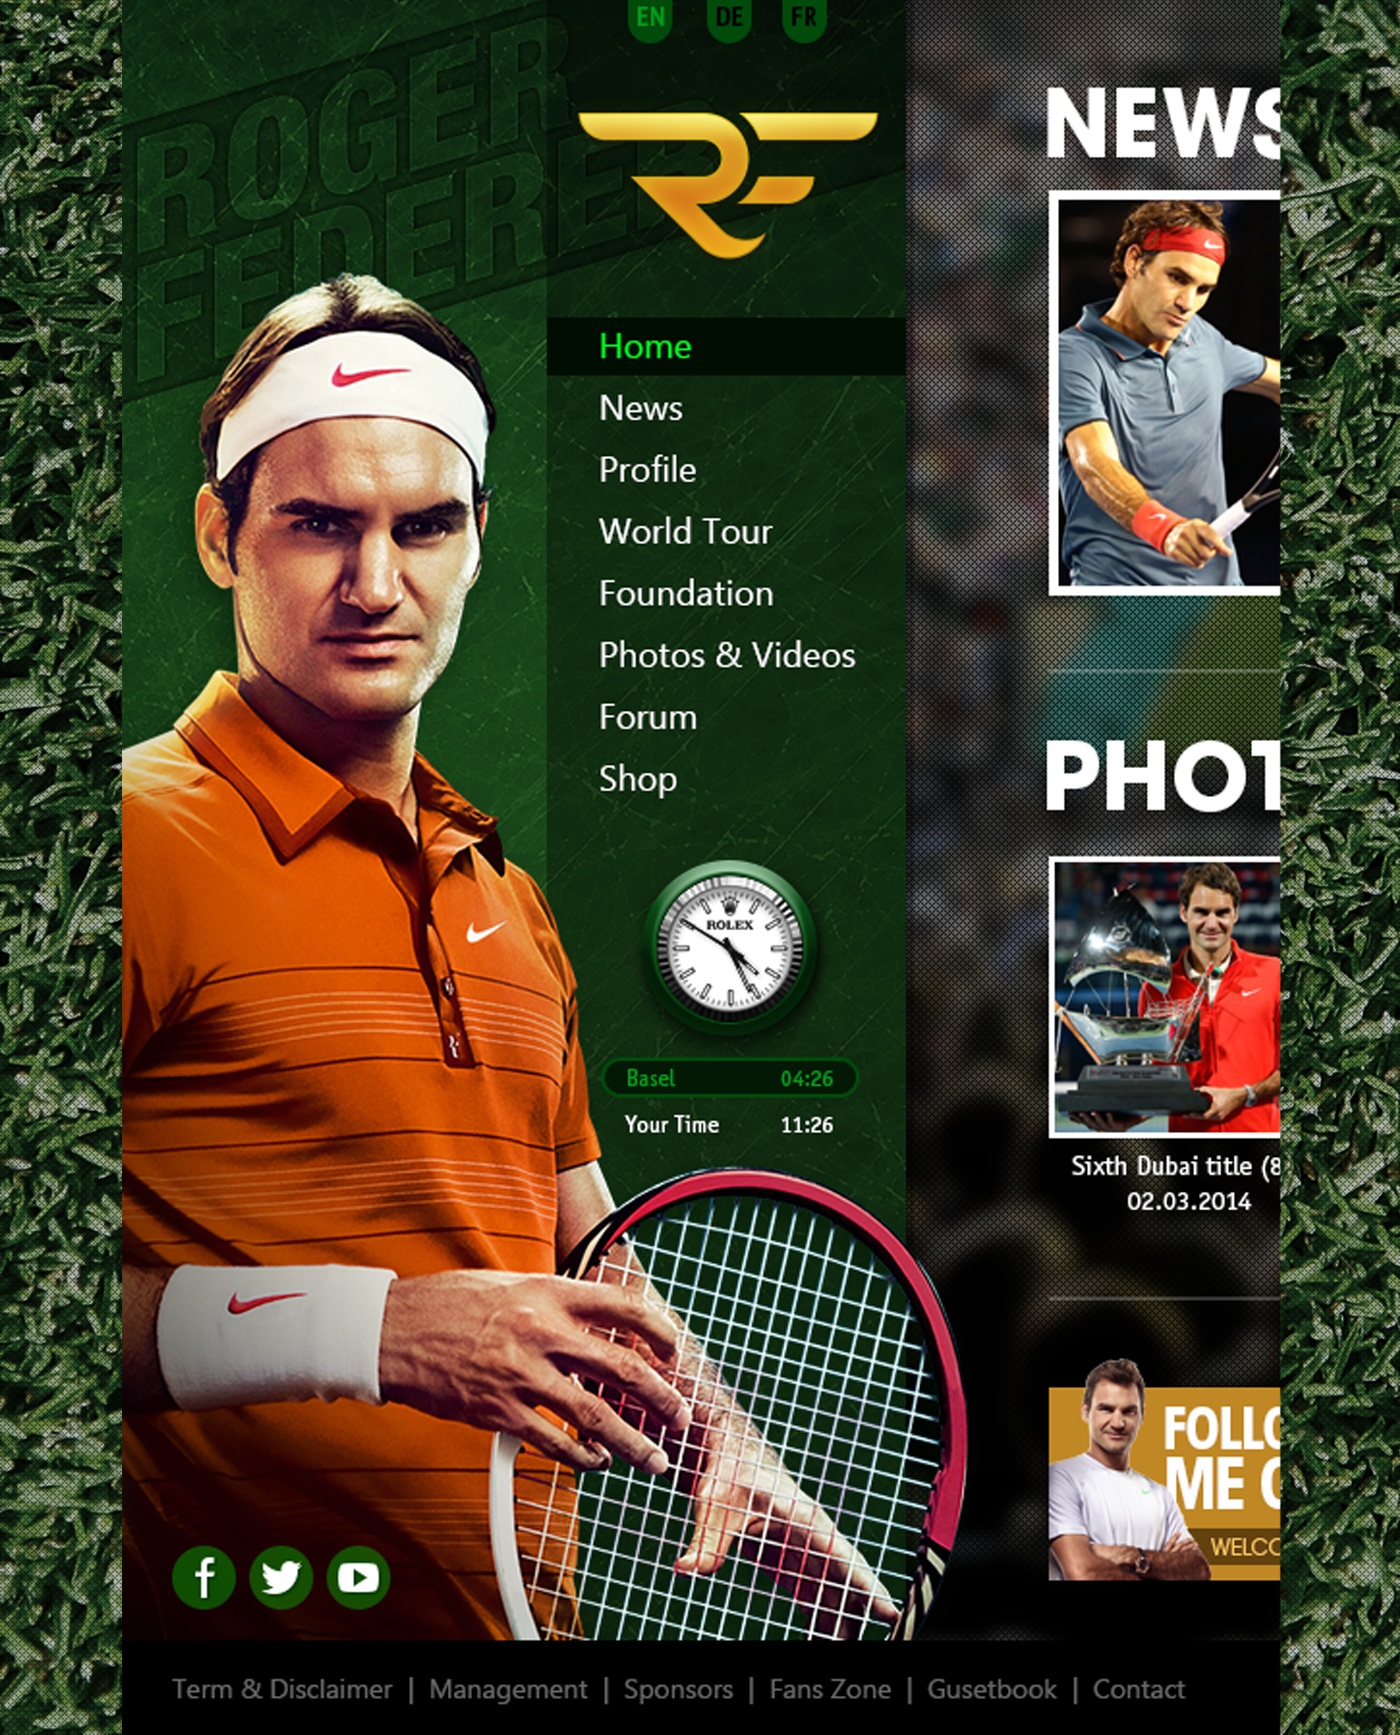 roger federer redesign UI ux Website tennis sport